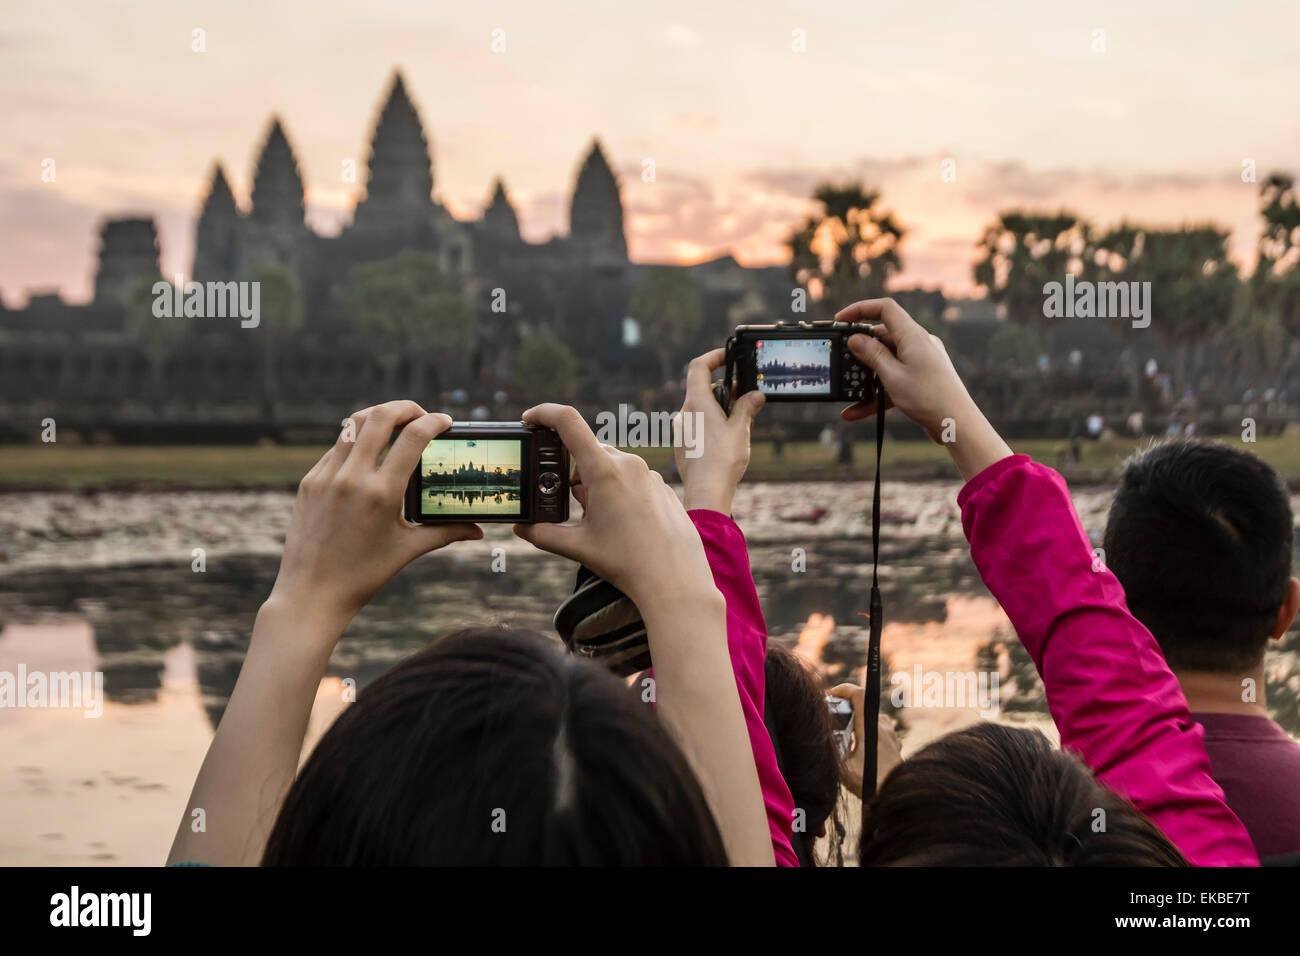 Los turistas fotografiando el amanecer en la entrada oeste de Angkor Wat, Angkor, UNESCO, Siem Reap, Camboya, Indochina, Asia Foto de stock